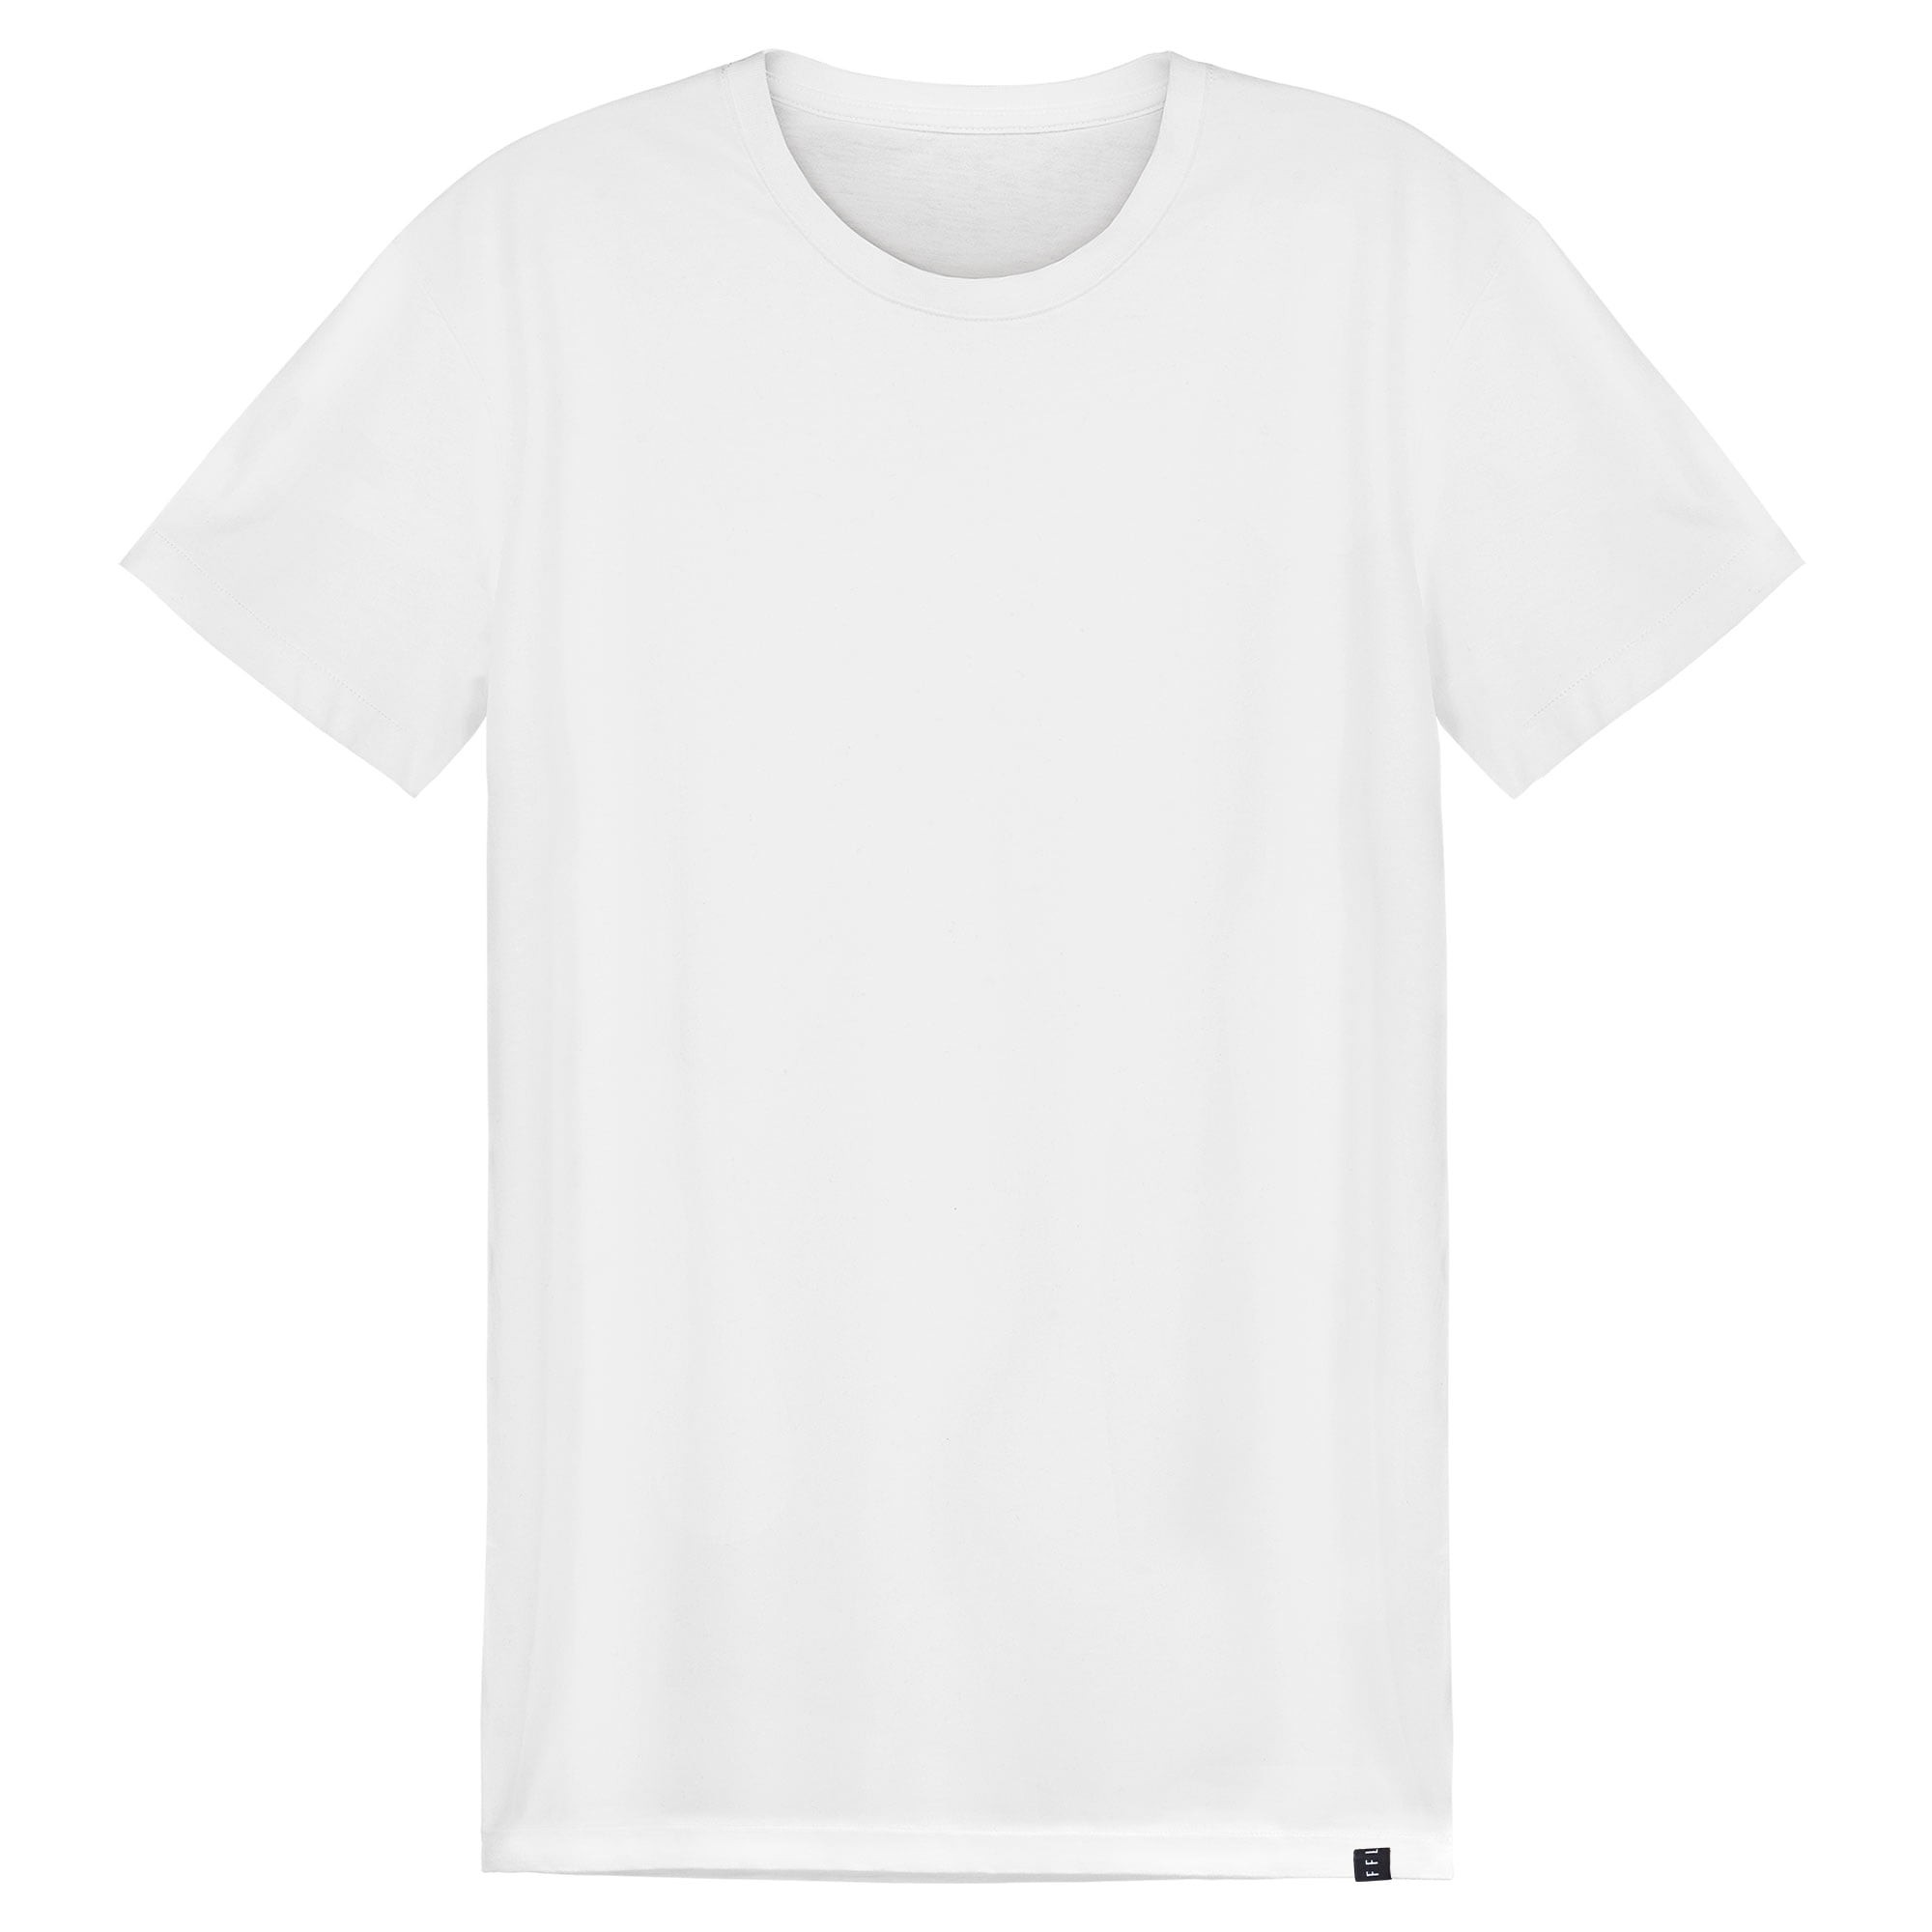 Men High Quality Tailored T-shirt - FFLTEES